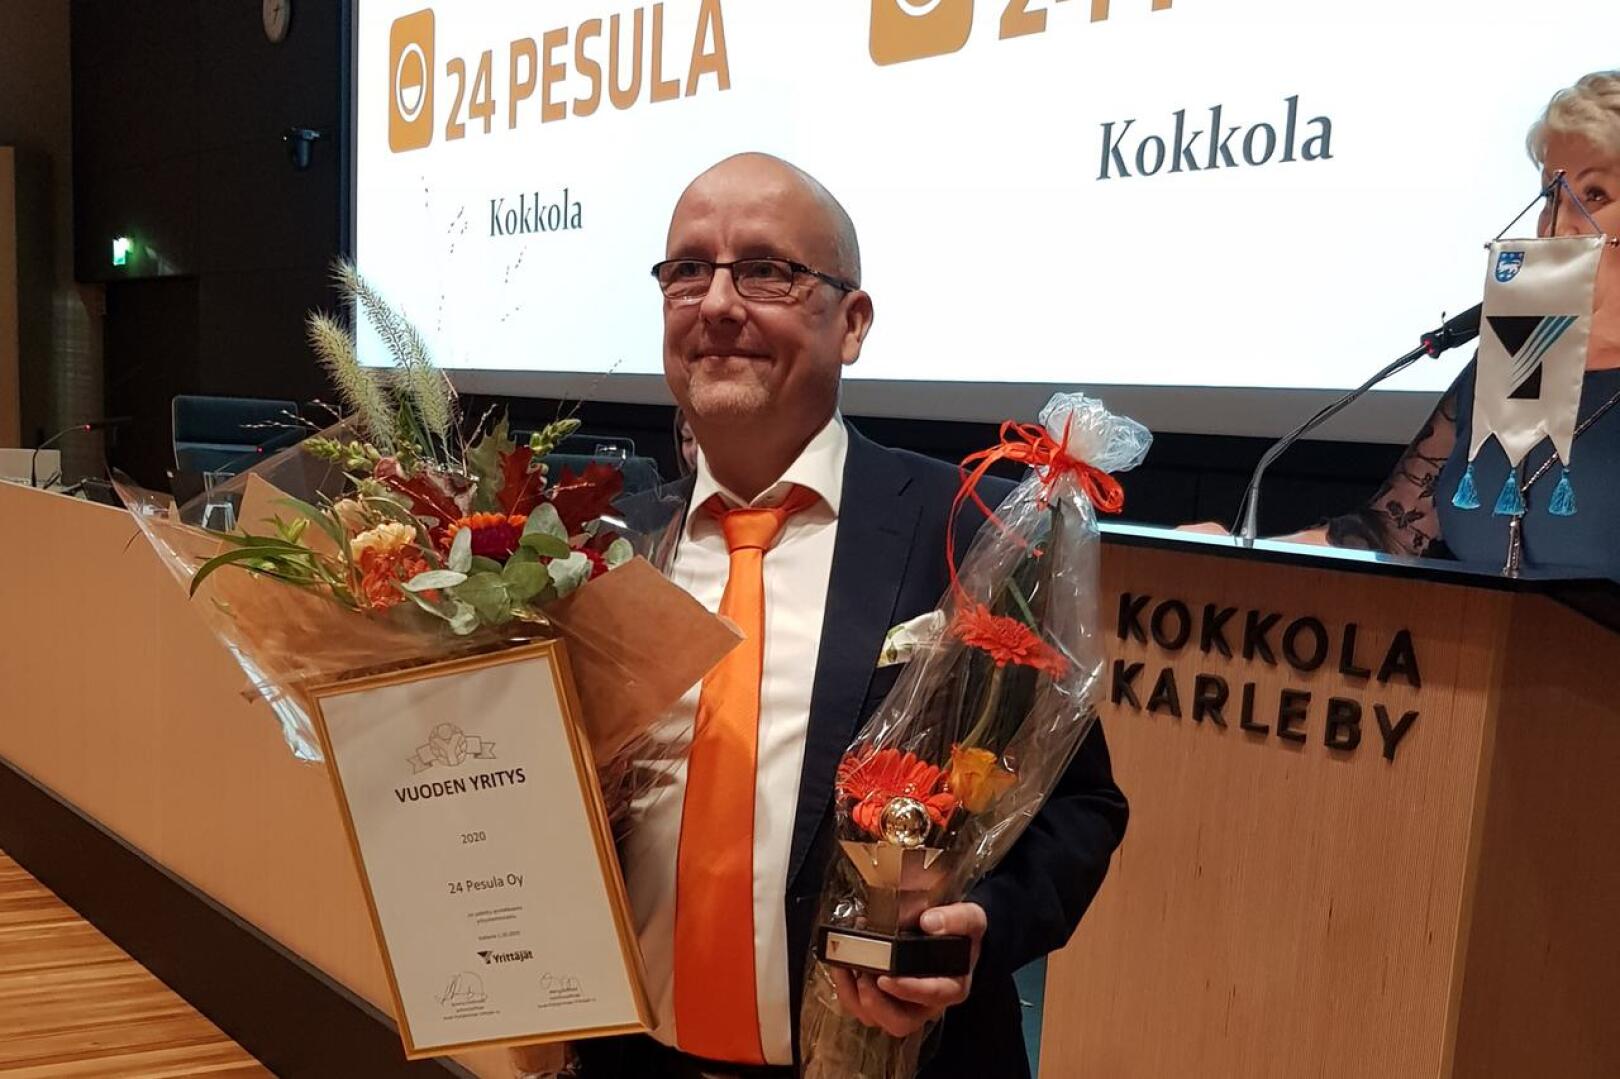 24 Pesula Oy:n toimitusjohtaja Asko Nevala otti vastaan Keski-Pohjanmaan Yrittäjien maakunnallisen yrittäjäpalkinnon.